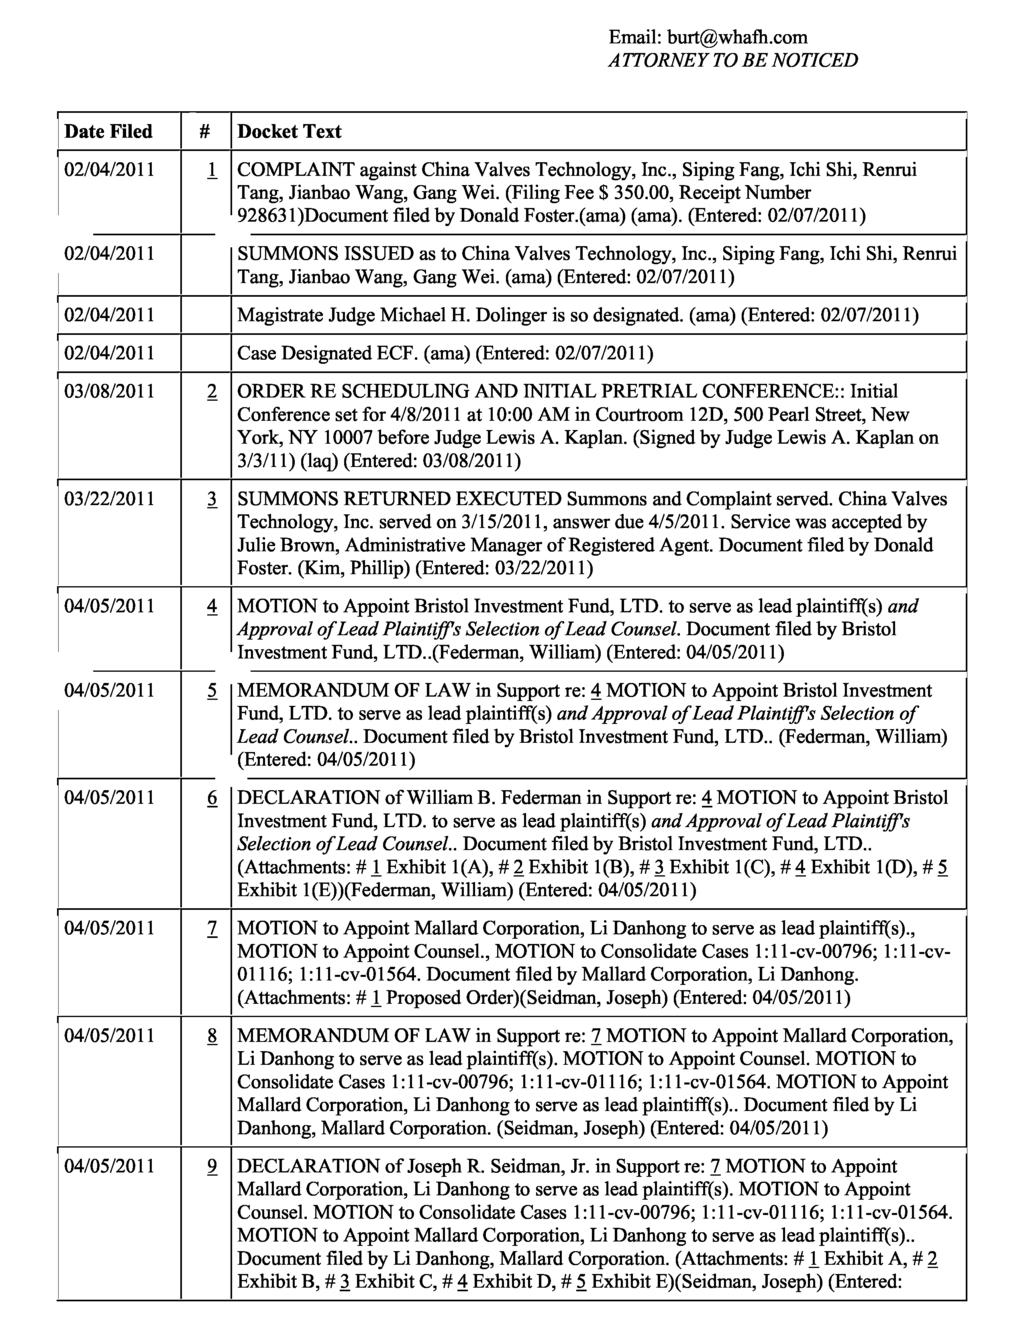 Email: burt@whafh.com Date Filed # Docket Text 02/04/2011 1 COMPLAINT against China Valves Technology, Inc., Siping Fang, Ichi Shi, Renrui Tang, Jianbao Wang, Gang Wei. (Filing Fee $ 350.